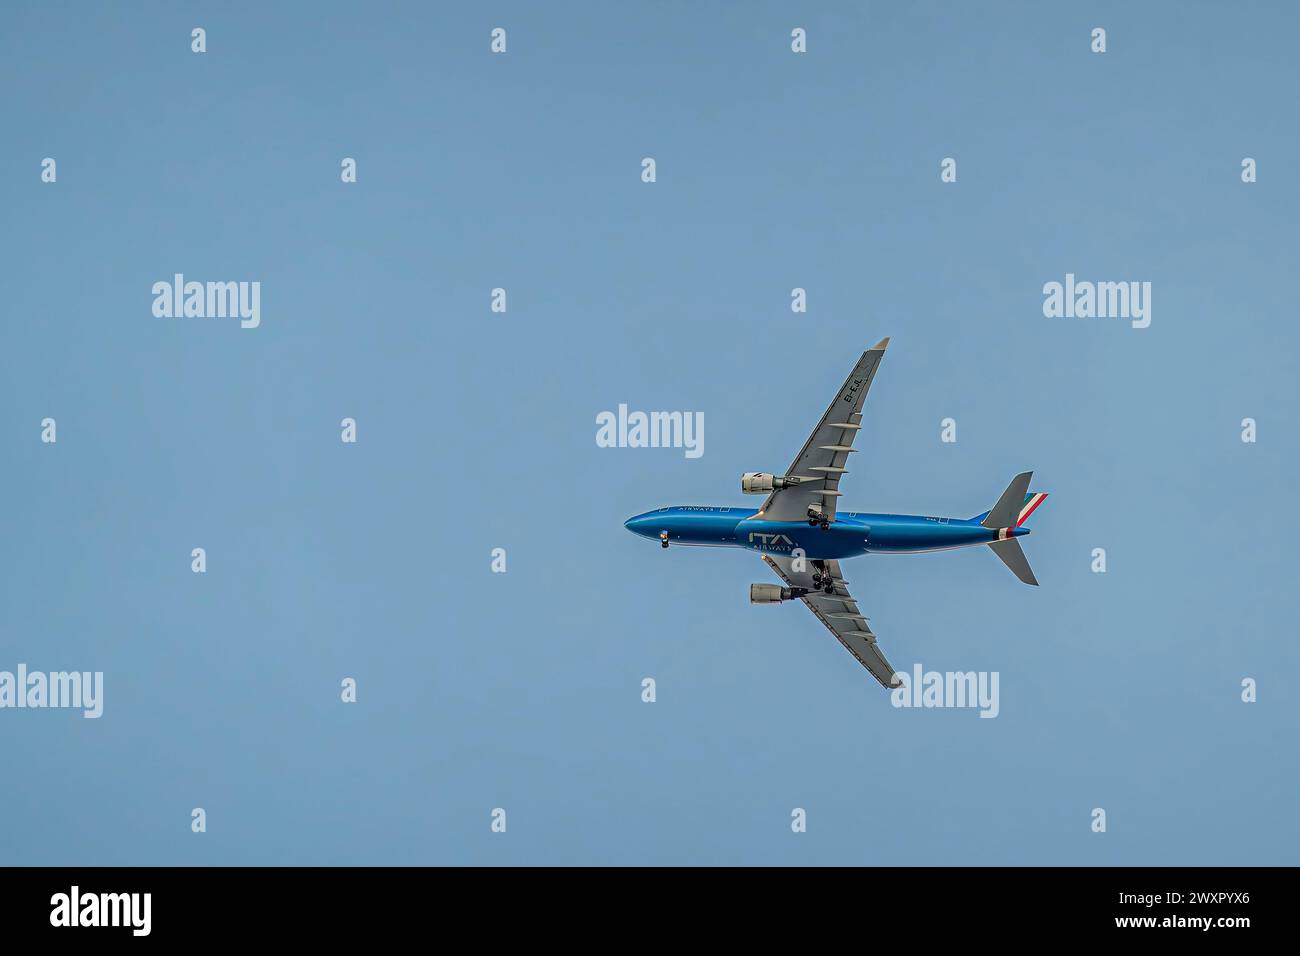 Flug von ITA Airways über Miami, Florida, USA Stockfoto